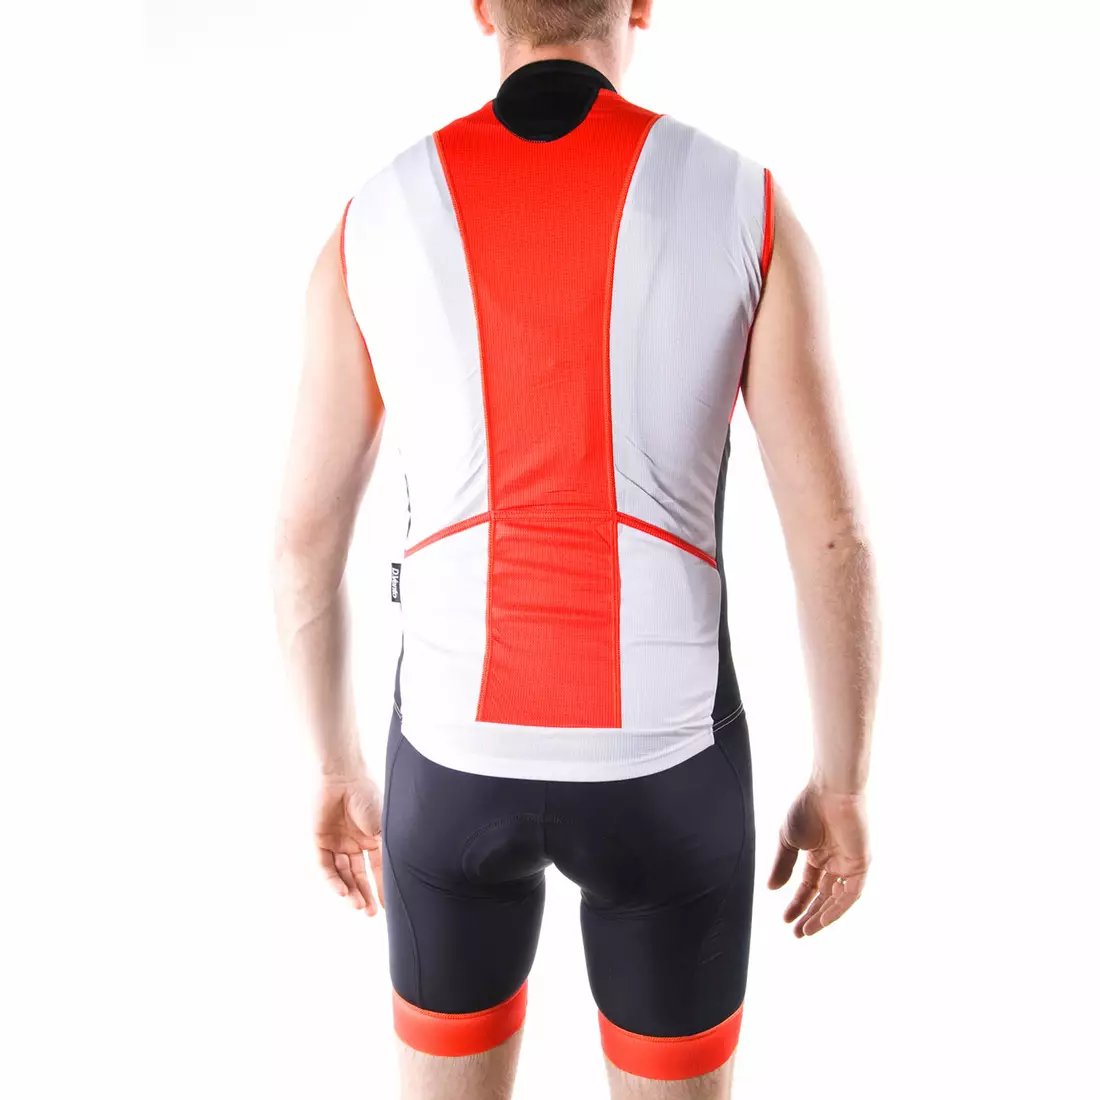 DEKO HAITI II men's sleeveless cycling jersey, white and red